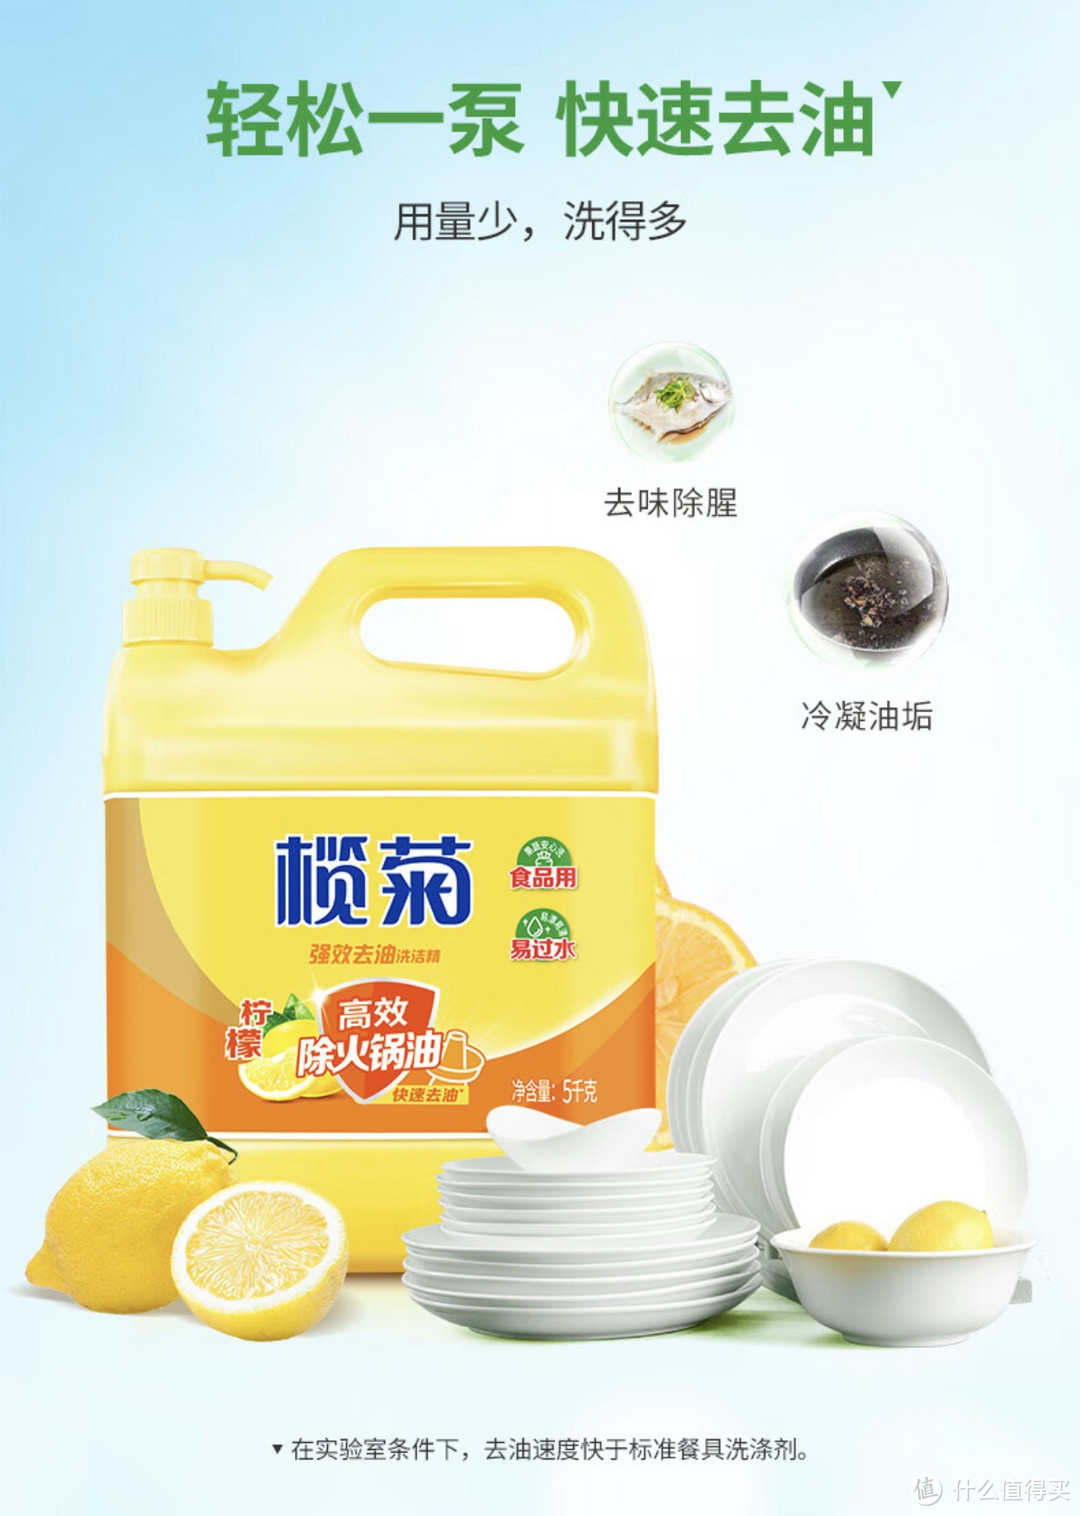 ￼￼超值好货：榄菊 洗洁精大桶5kg 菊之语柠檬去油果蔬清洗剂